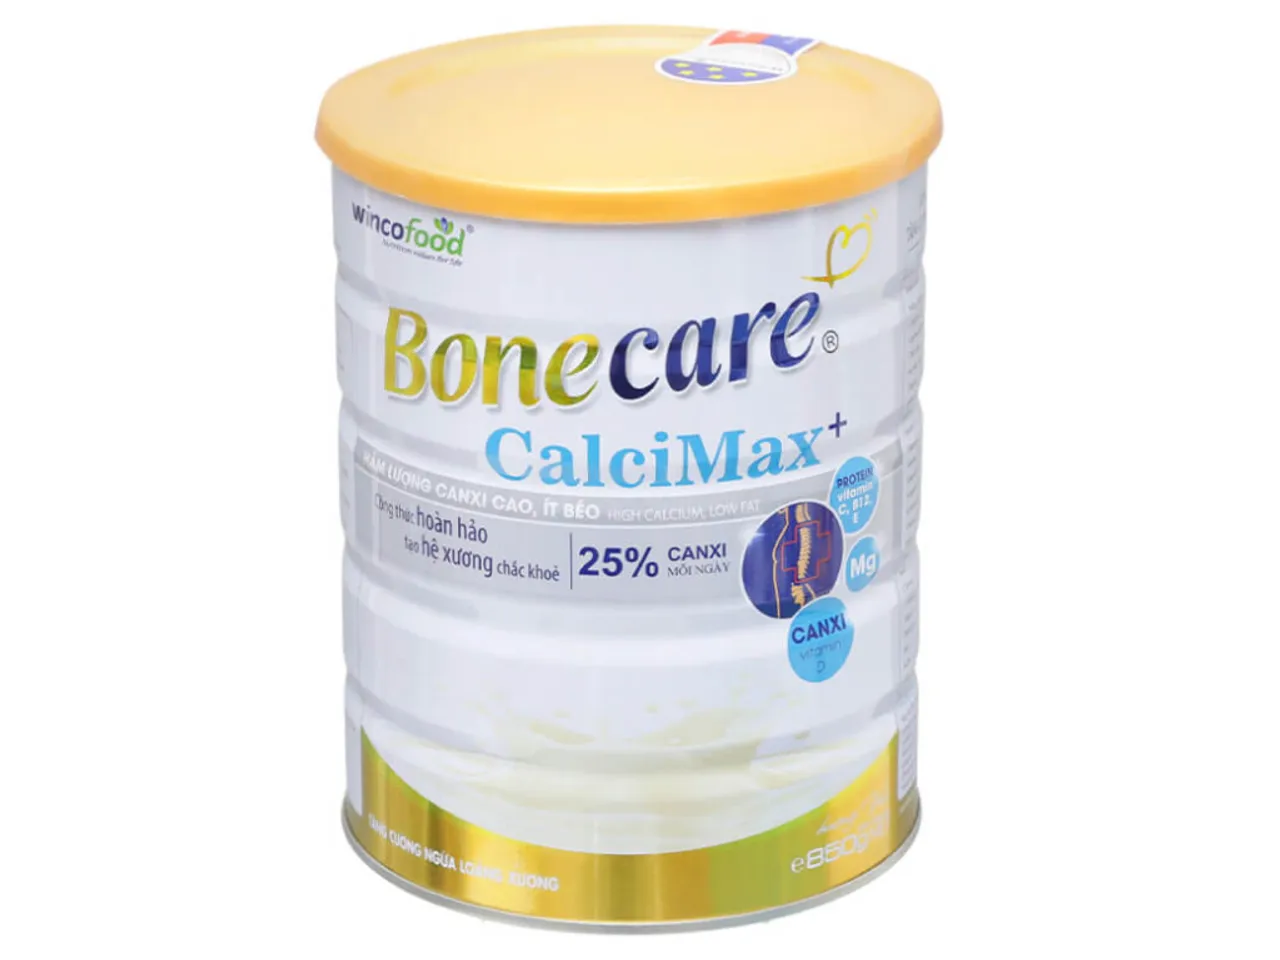 Sữa bột Wincofood Bonecare Calcimax+ hỗ trợ xương khớp